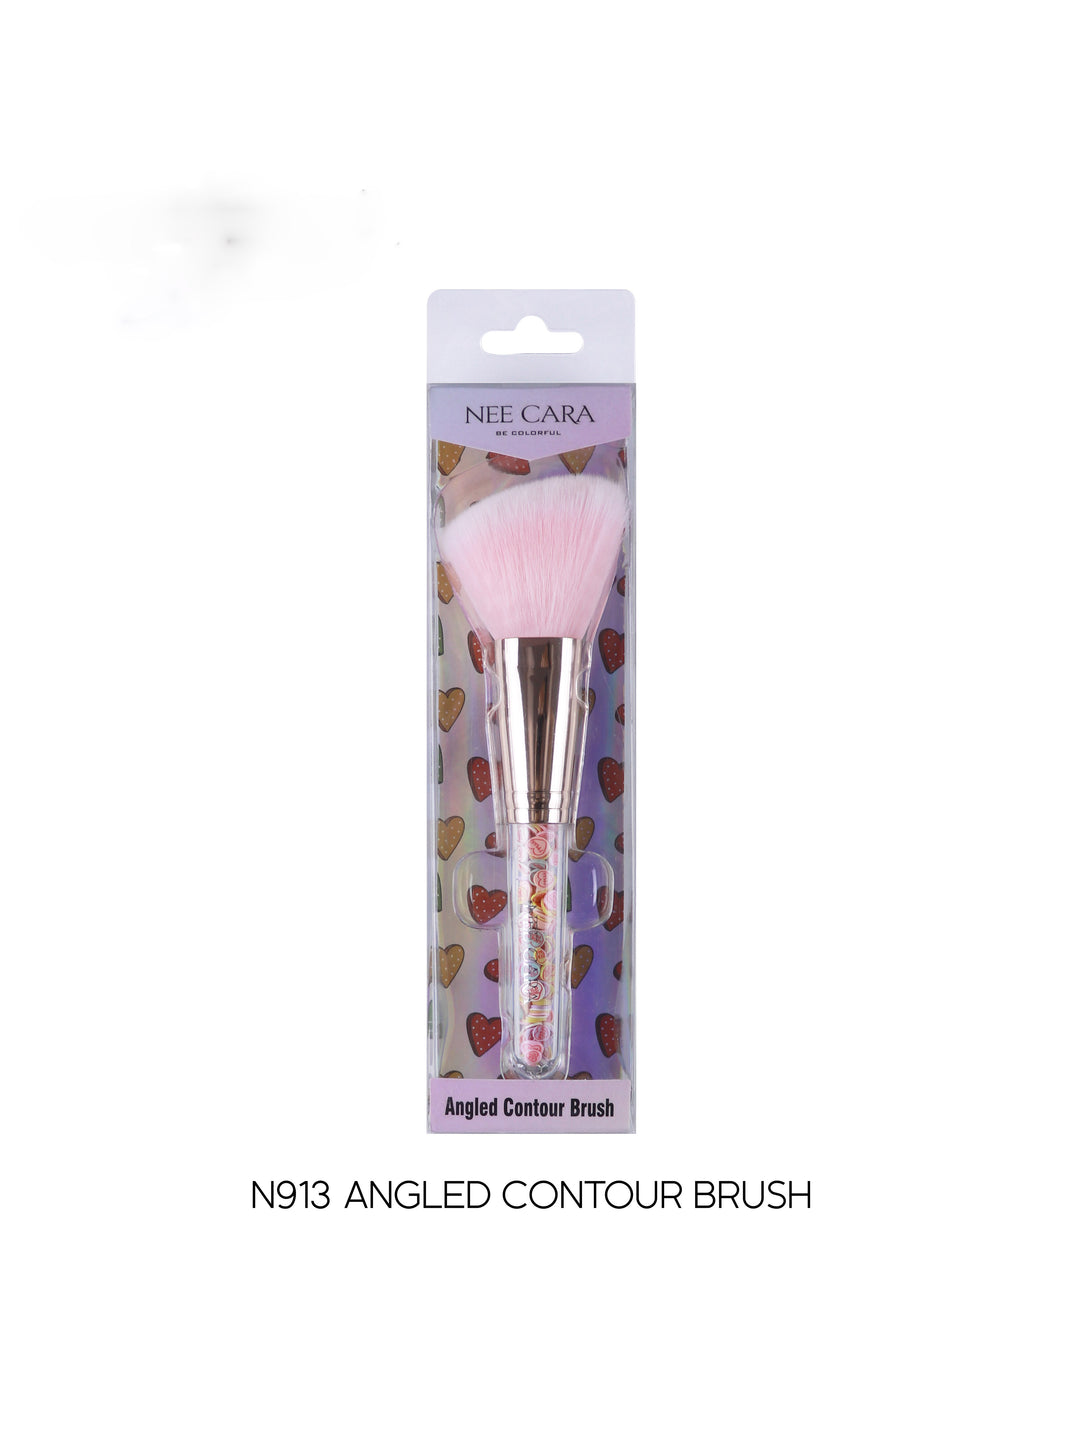 Nee Cara Angled Contour Brush N913 (Thai)